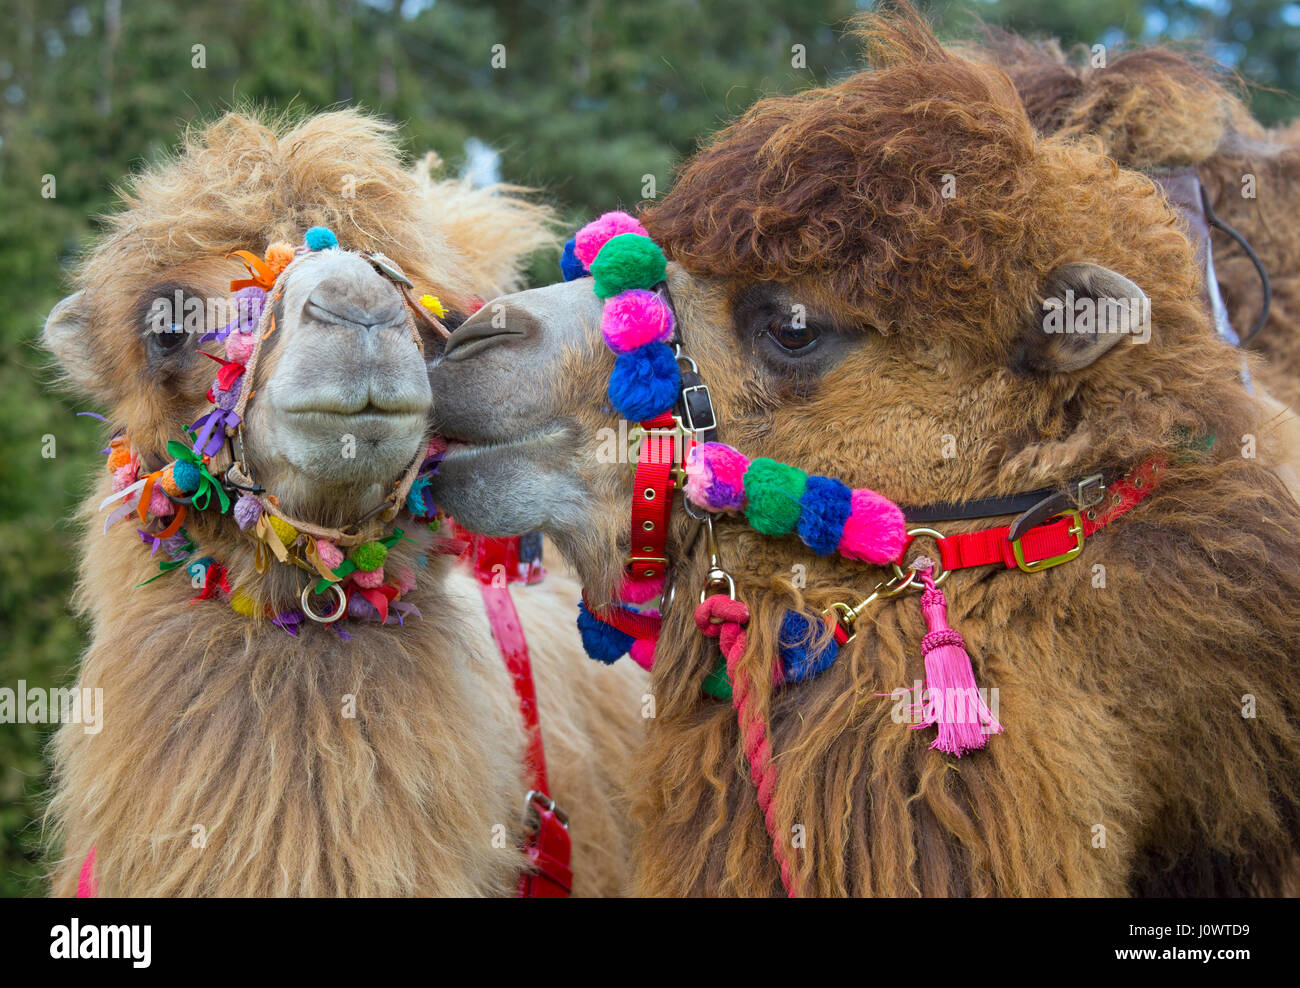 Les chameaux de Bactriane Camelus bactrianus domestique utilisé pour les courses de chameaux Banque D'Images